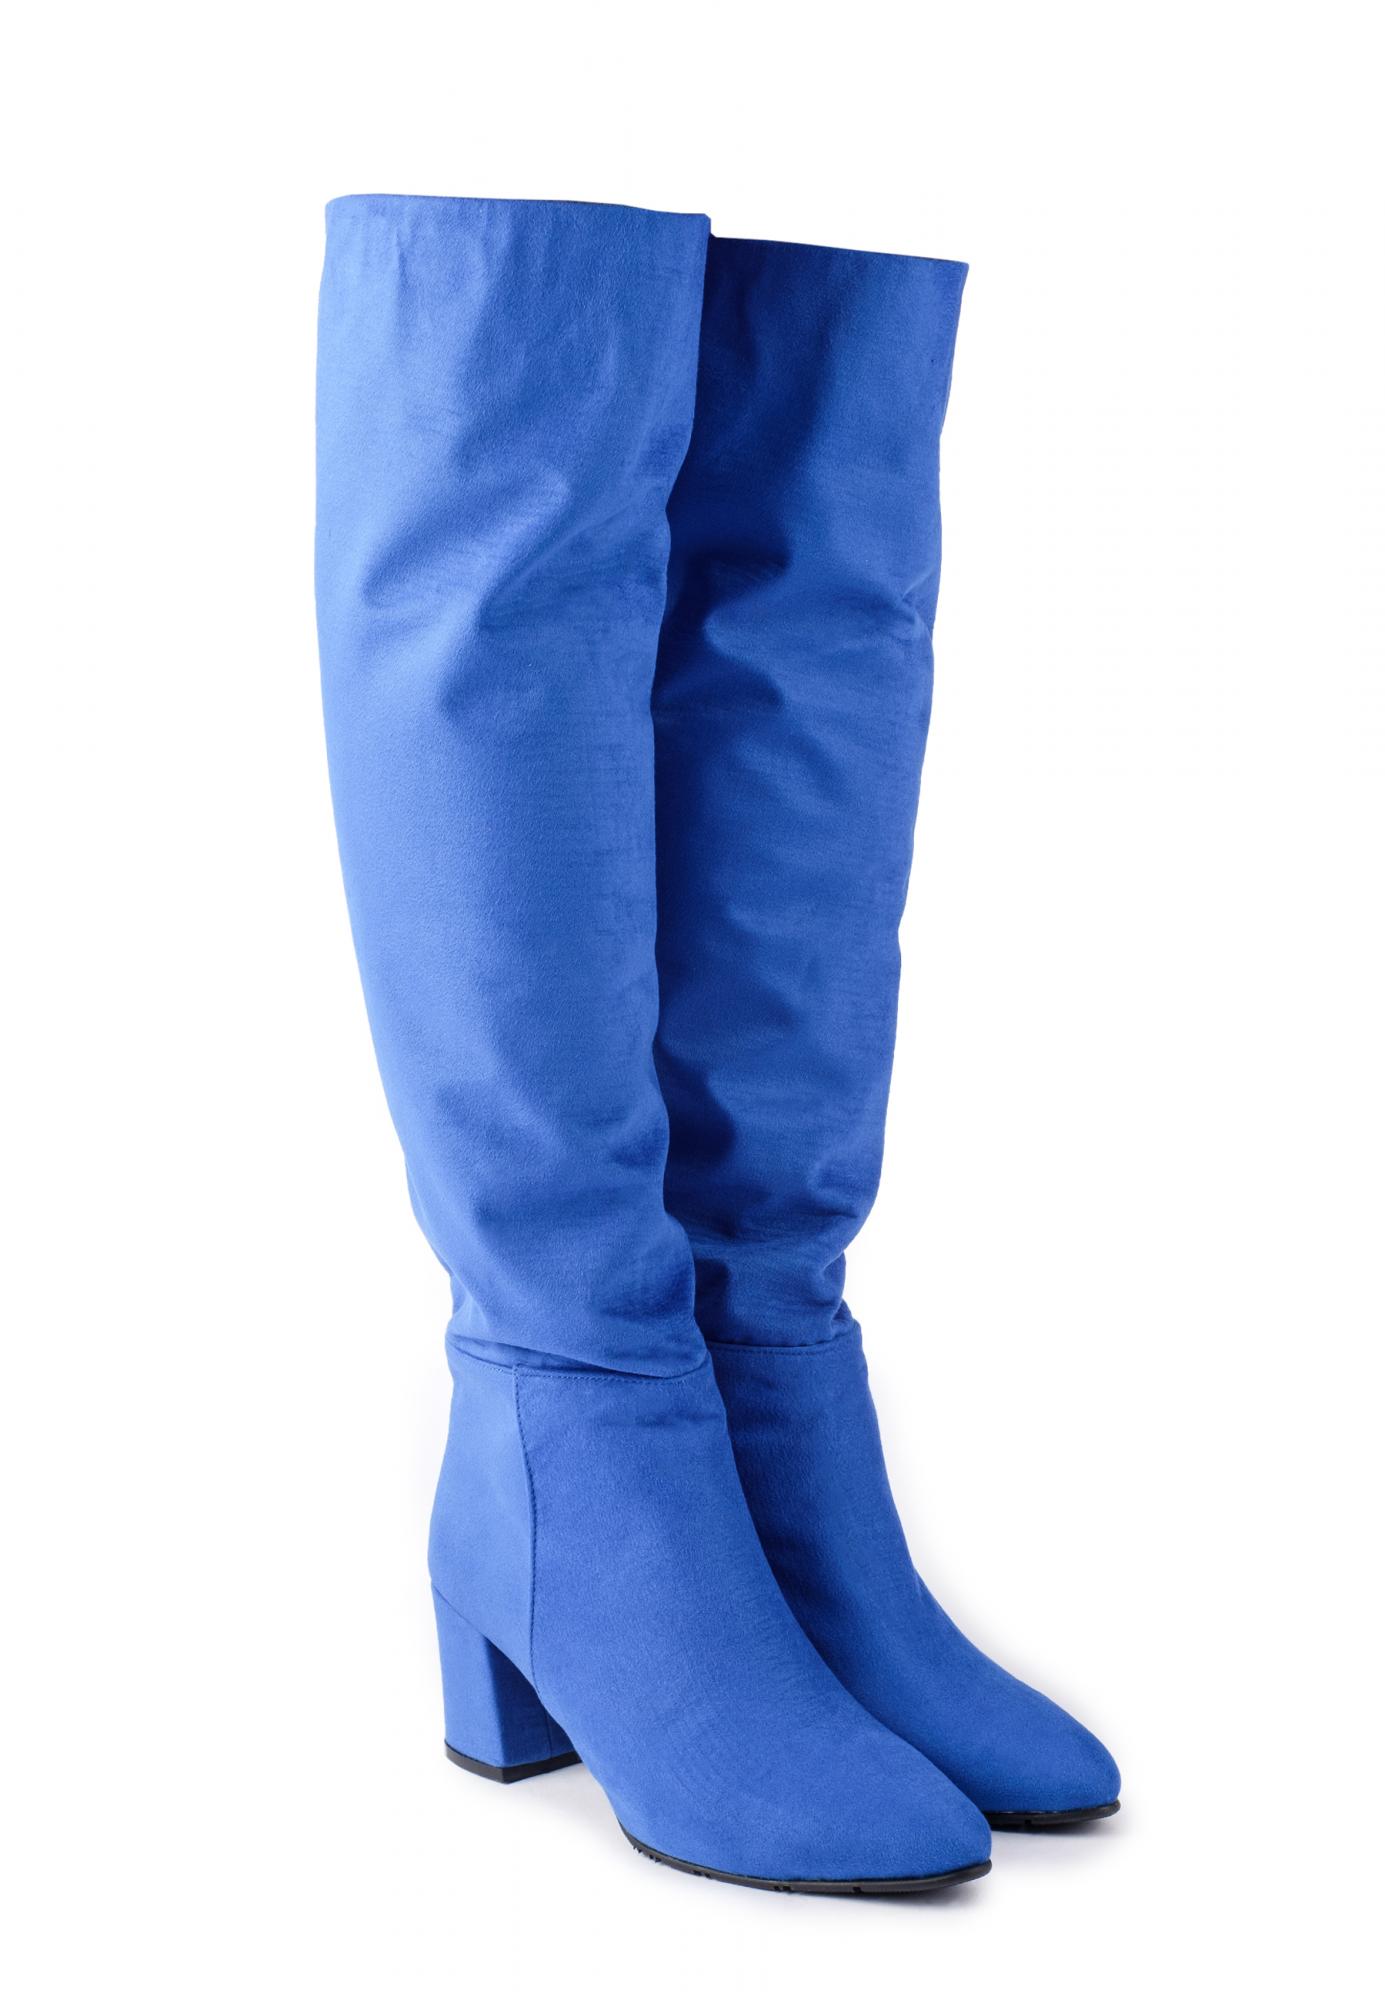 Women boots D205 - BLUE